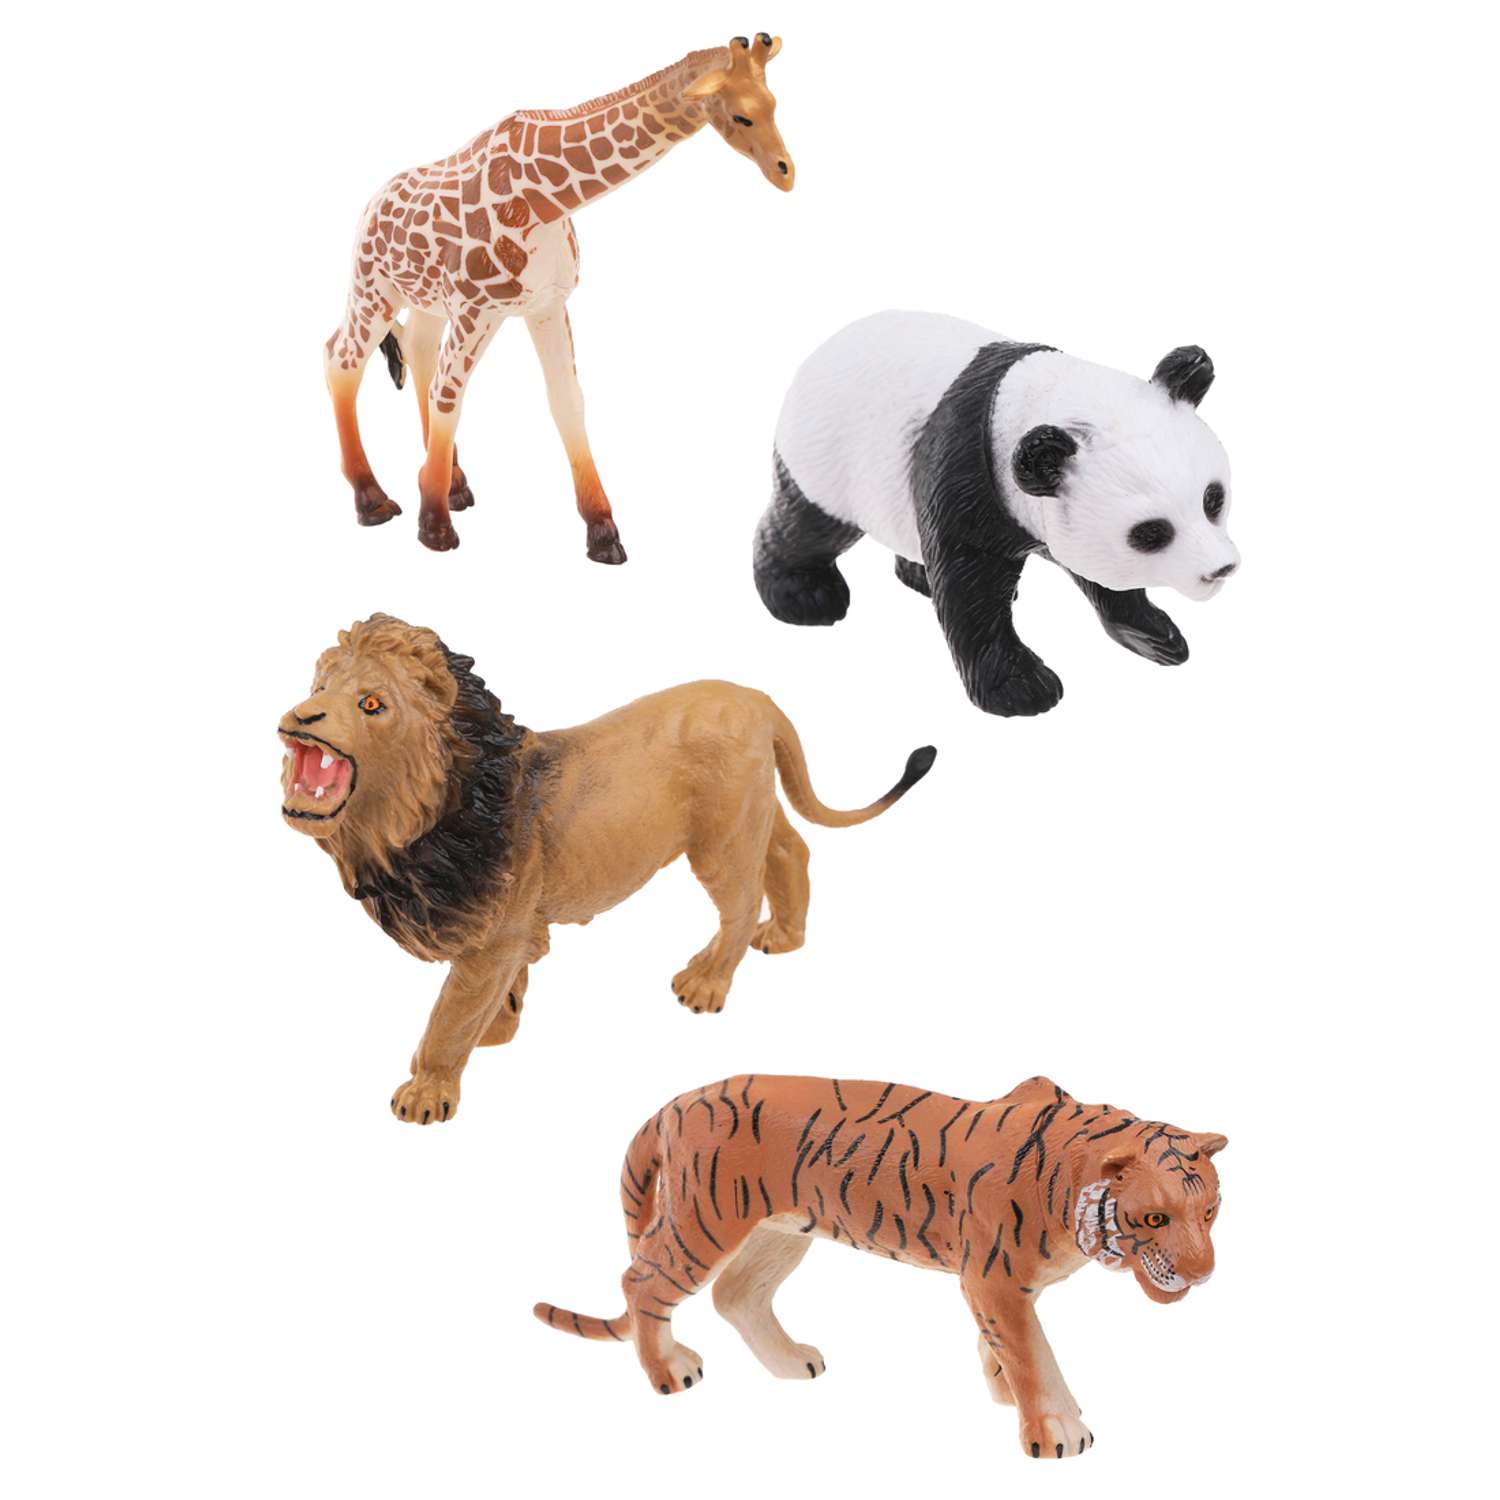 Фигурки животных Наша Игрушка набор игровой для развития и познания 4 шт - фото 1